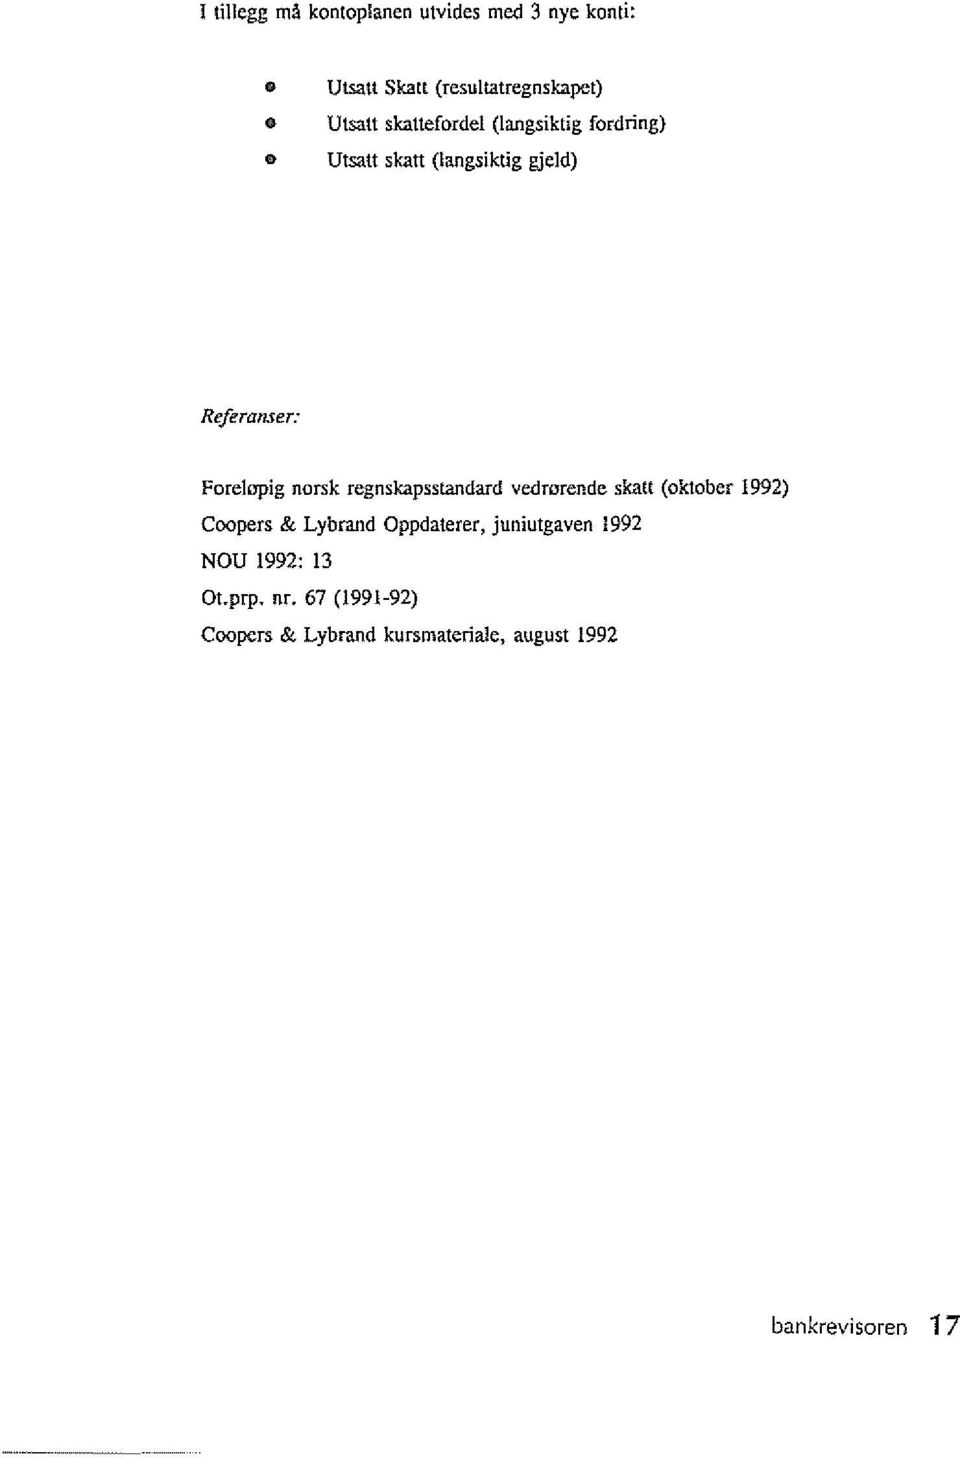 regnskapsstandard vedmrende skatt (oktober 1992) Coopers & Lybrand Oppdaterer, juniutgaven 1992